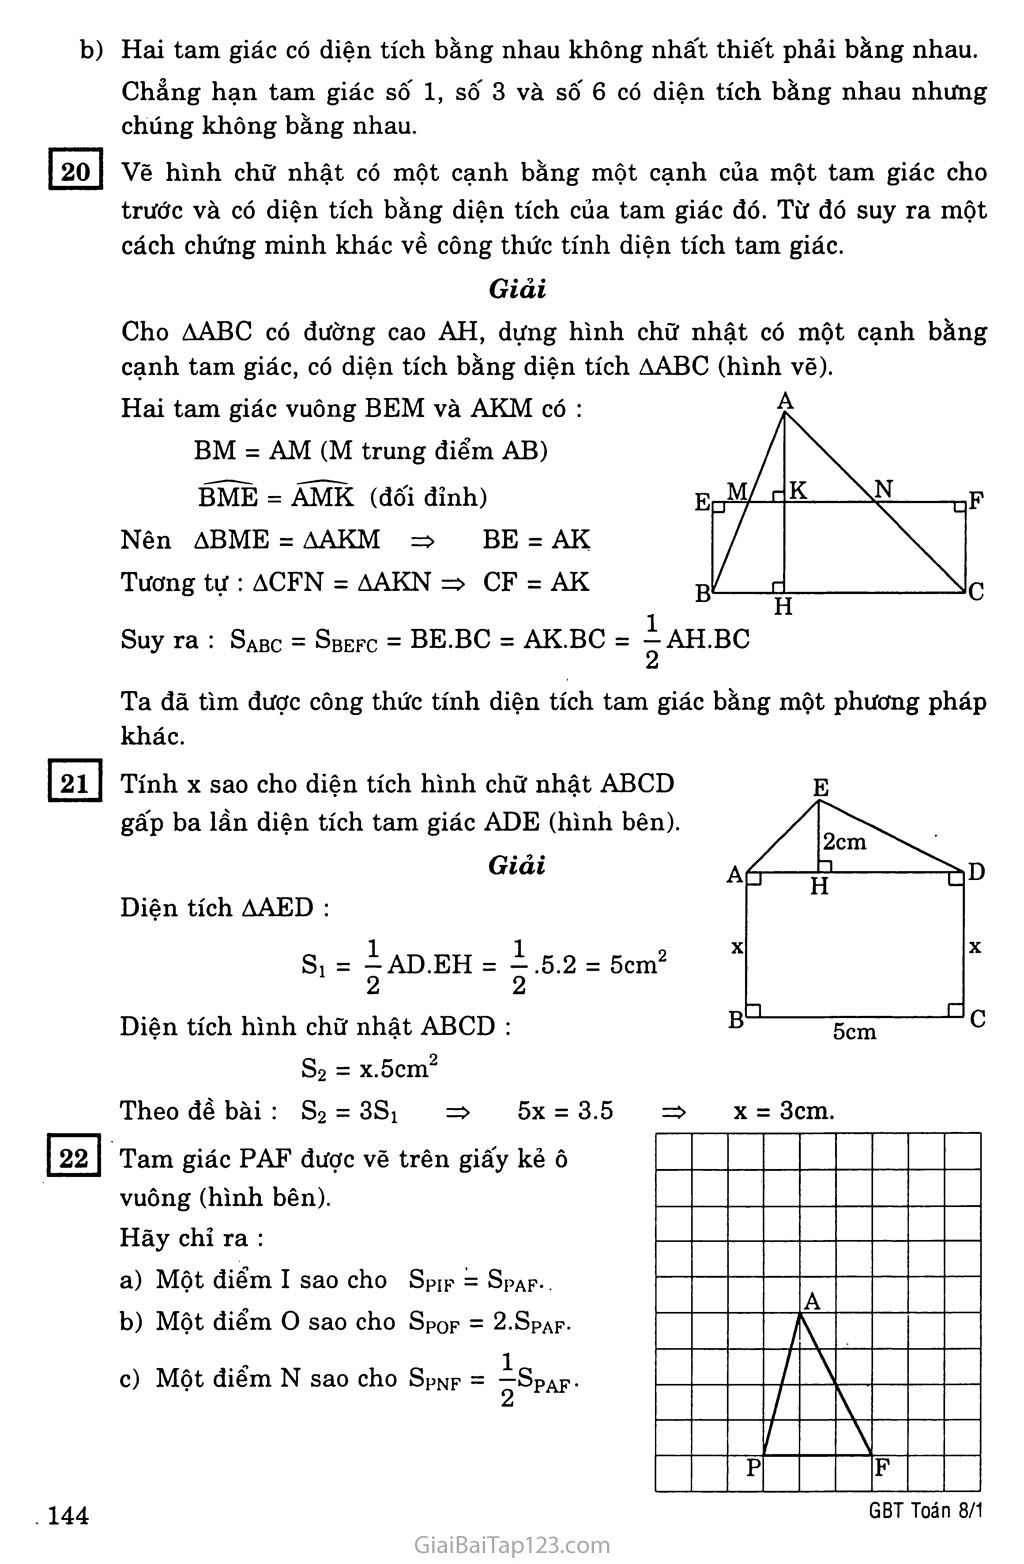 §3. Diện tích tam giác trang 3